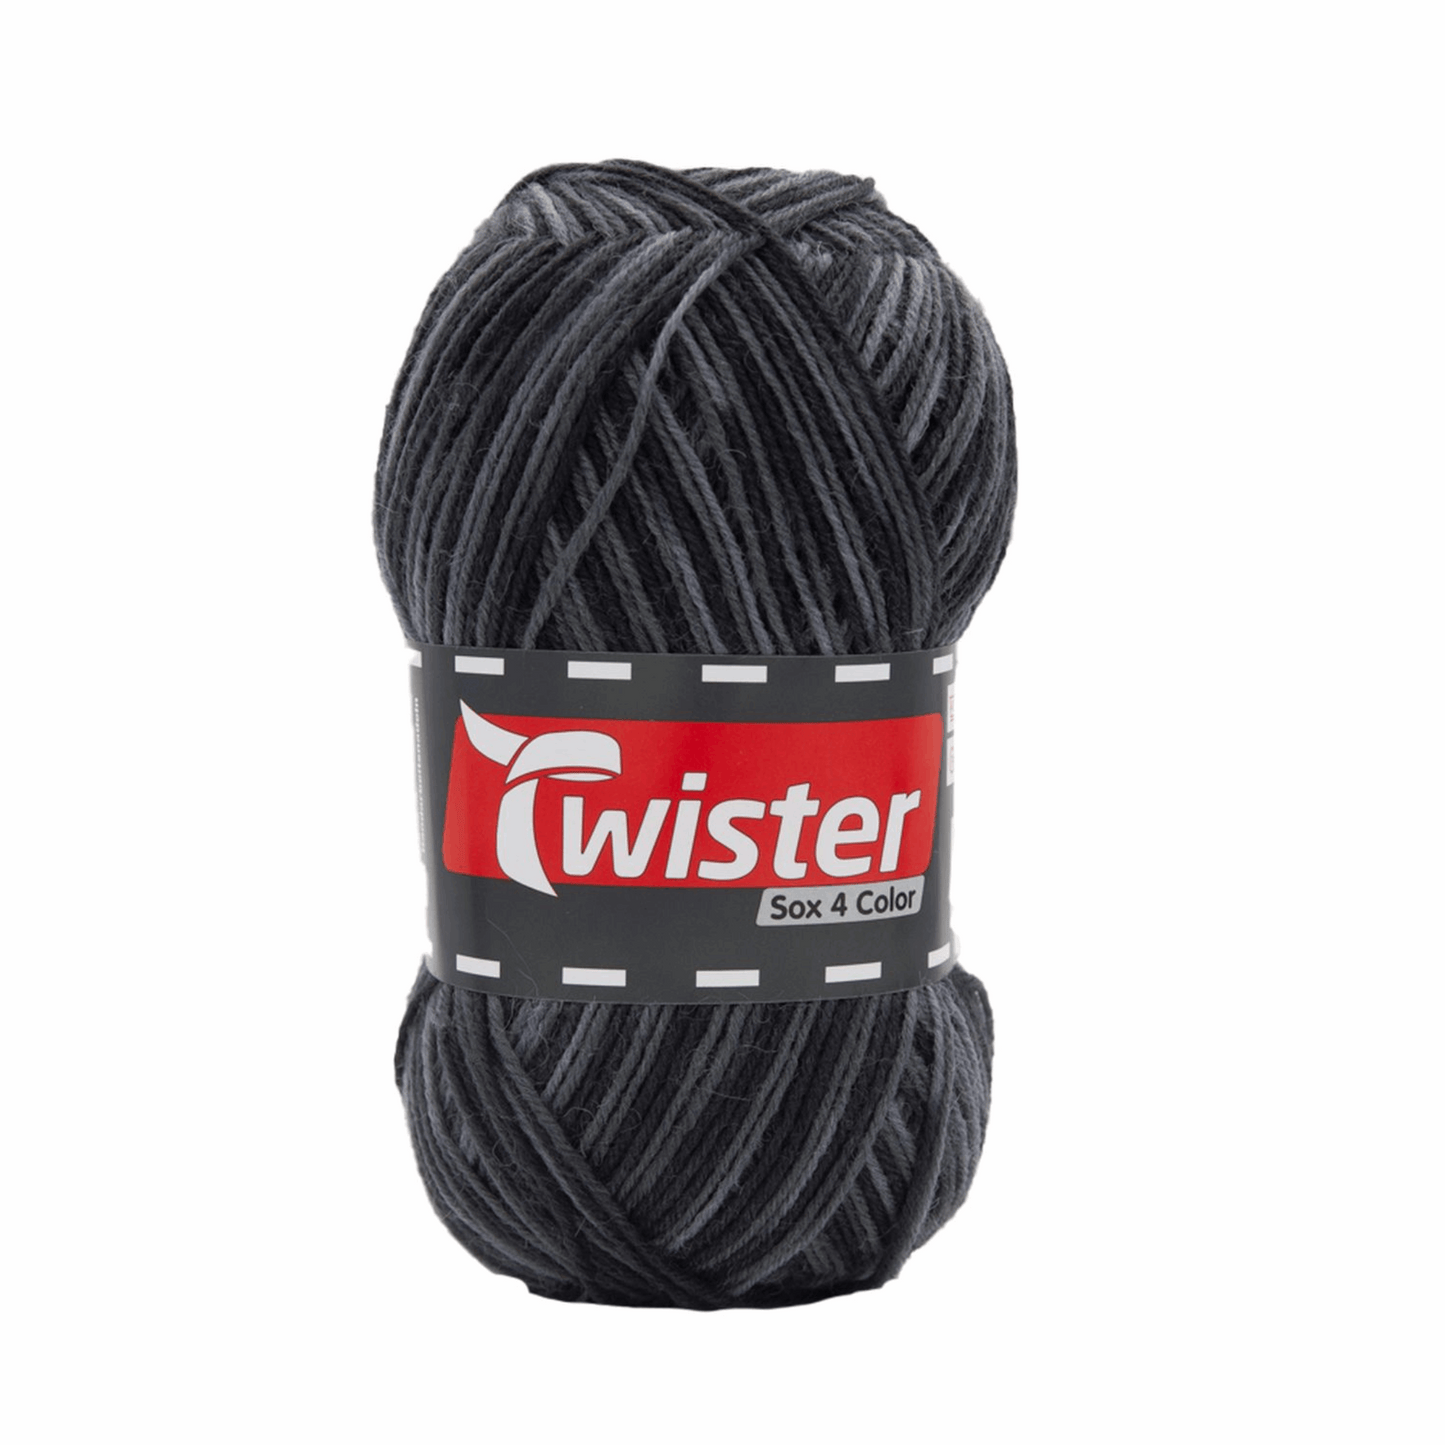 Twister Sox4 Color superwash, grau multi, 98306, Farbe 115